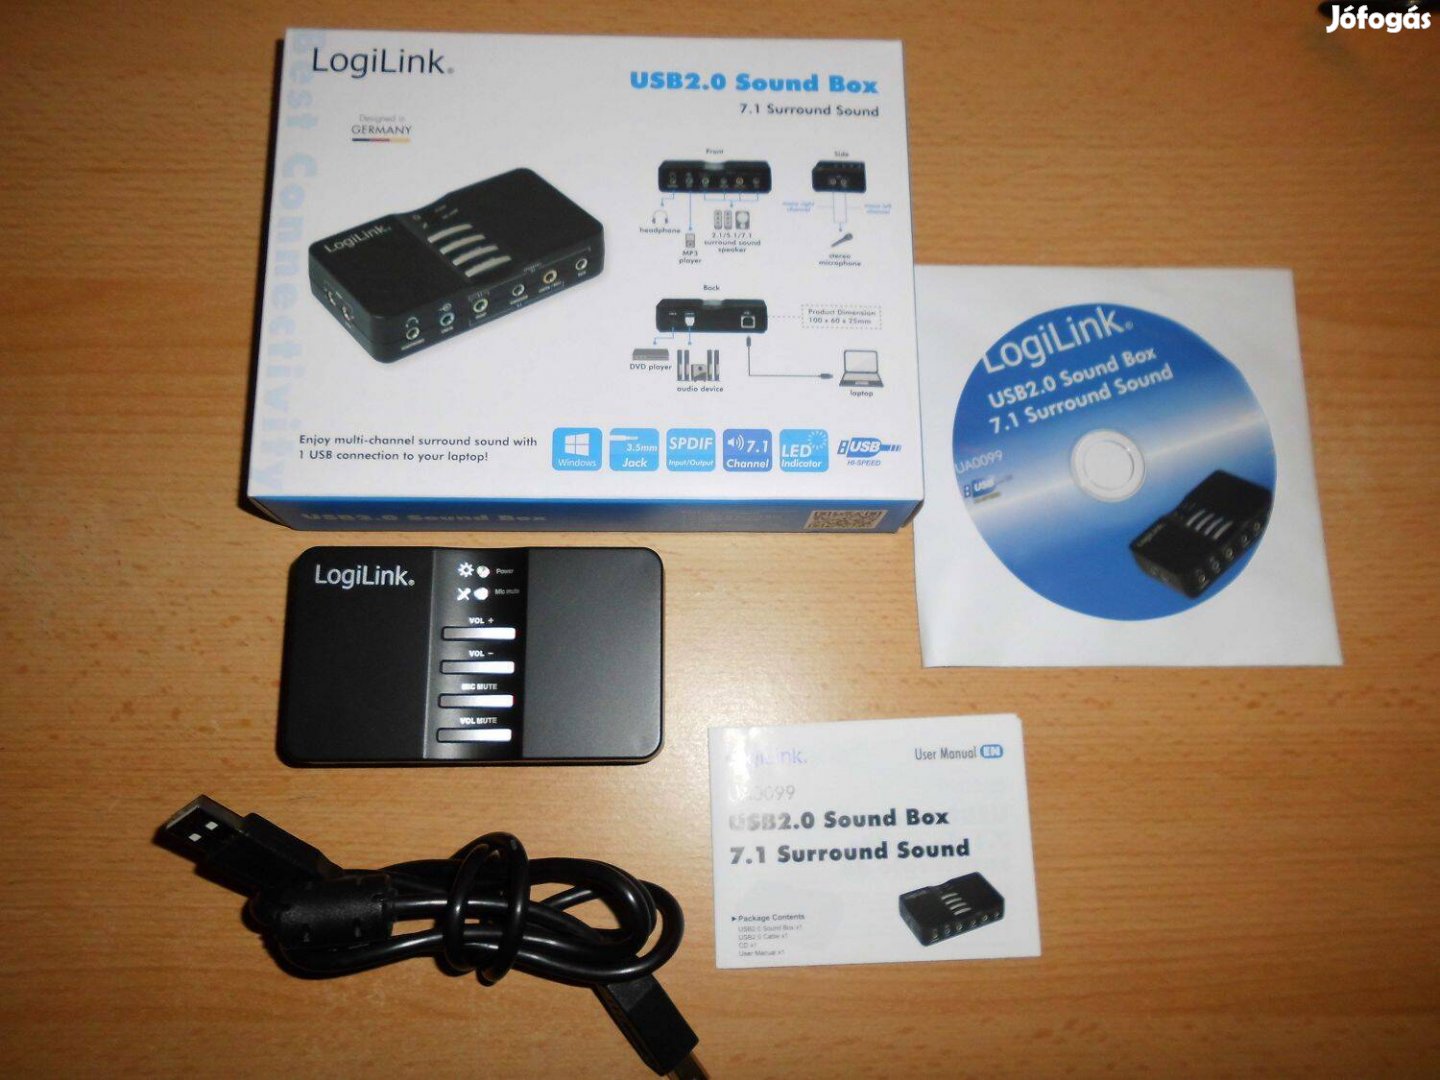 Logilink 7.1 csatornás USB Soundbox